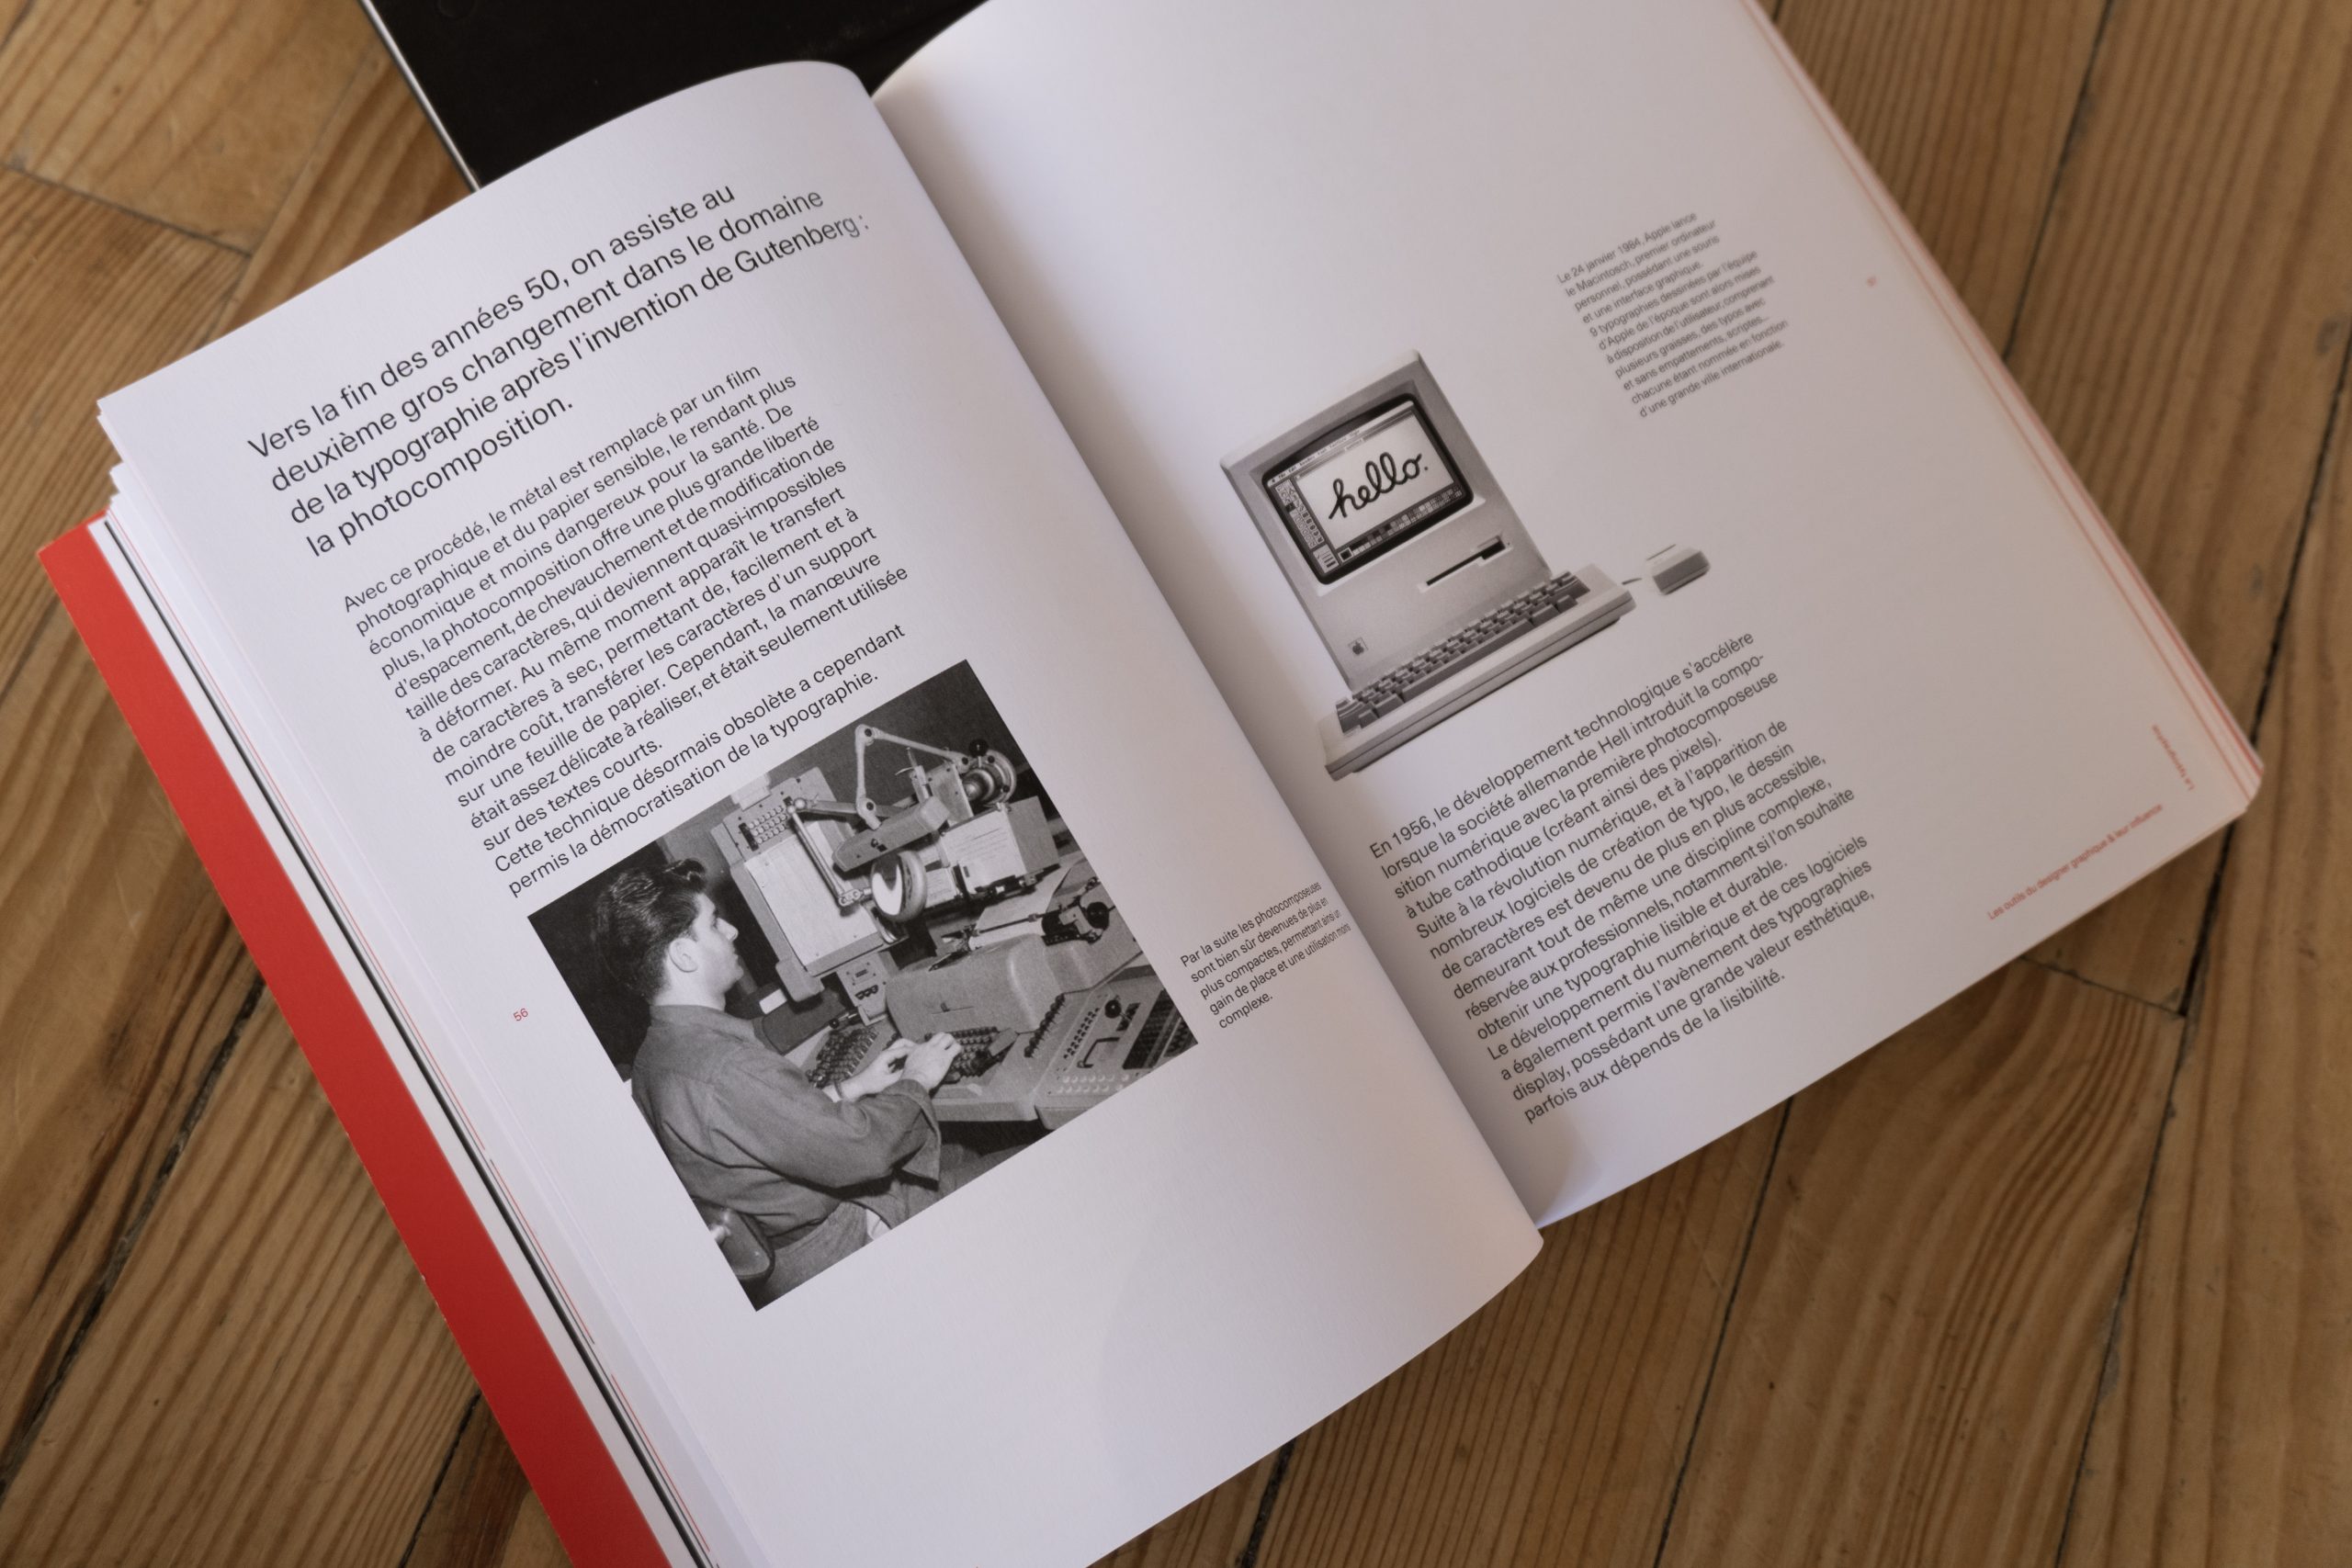 Visuel de l'intérieur du livre montrant une des double page du chapitre sur la typographie.